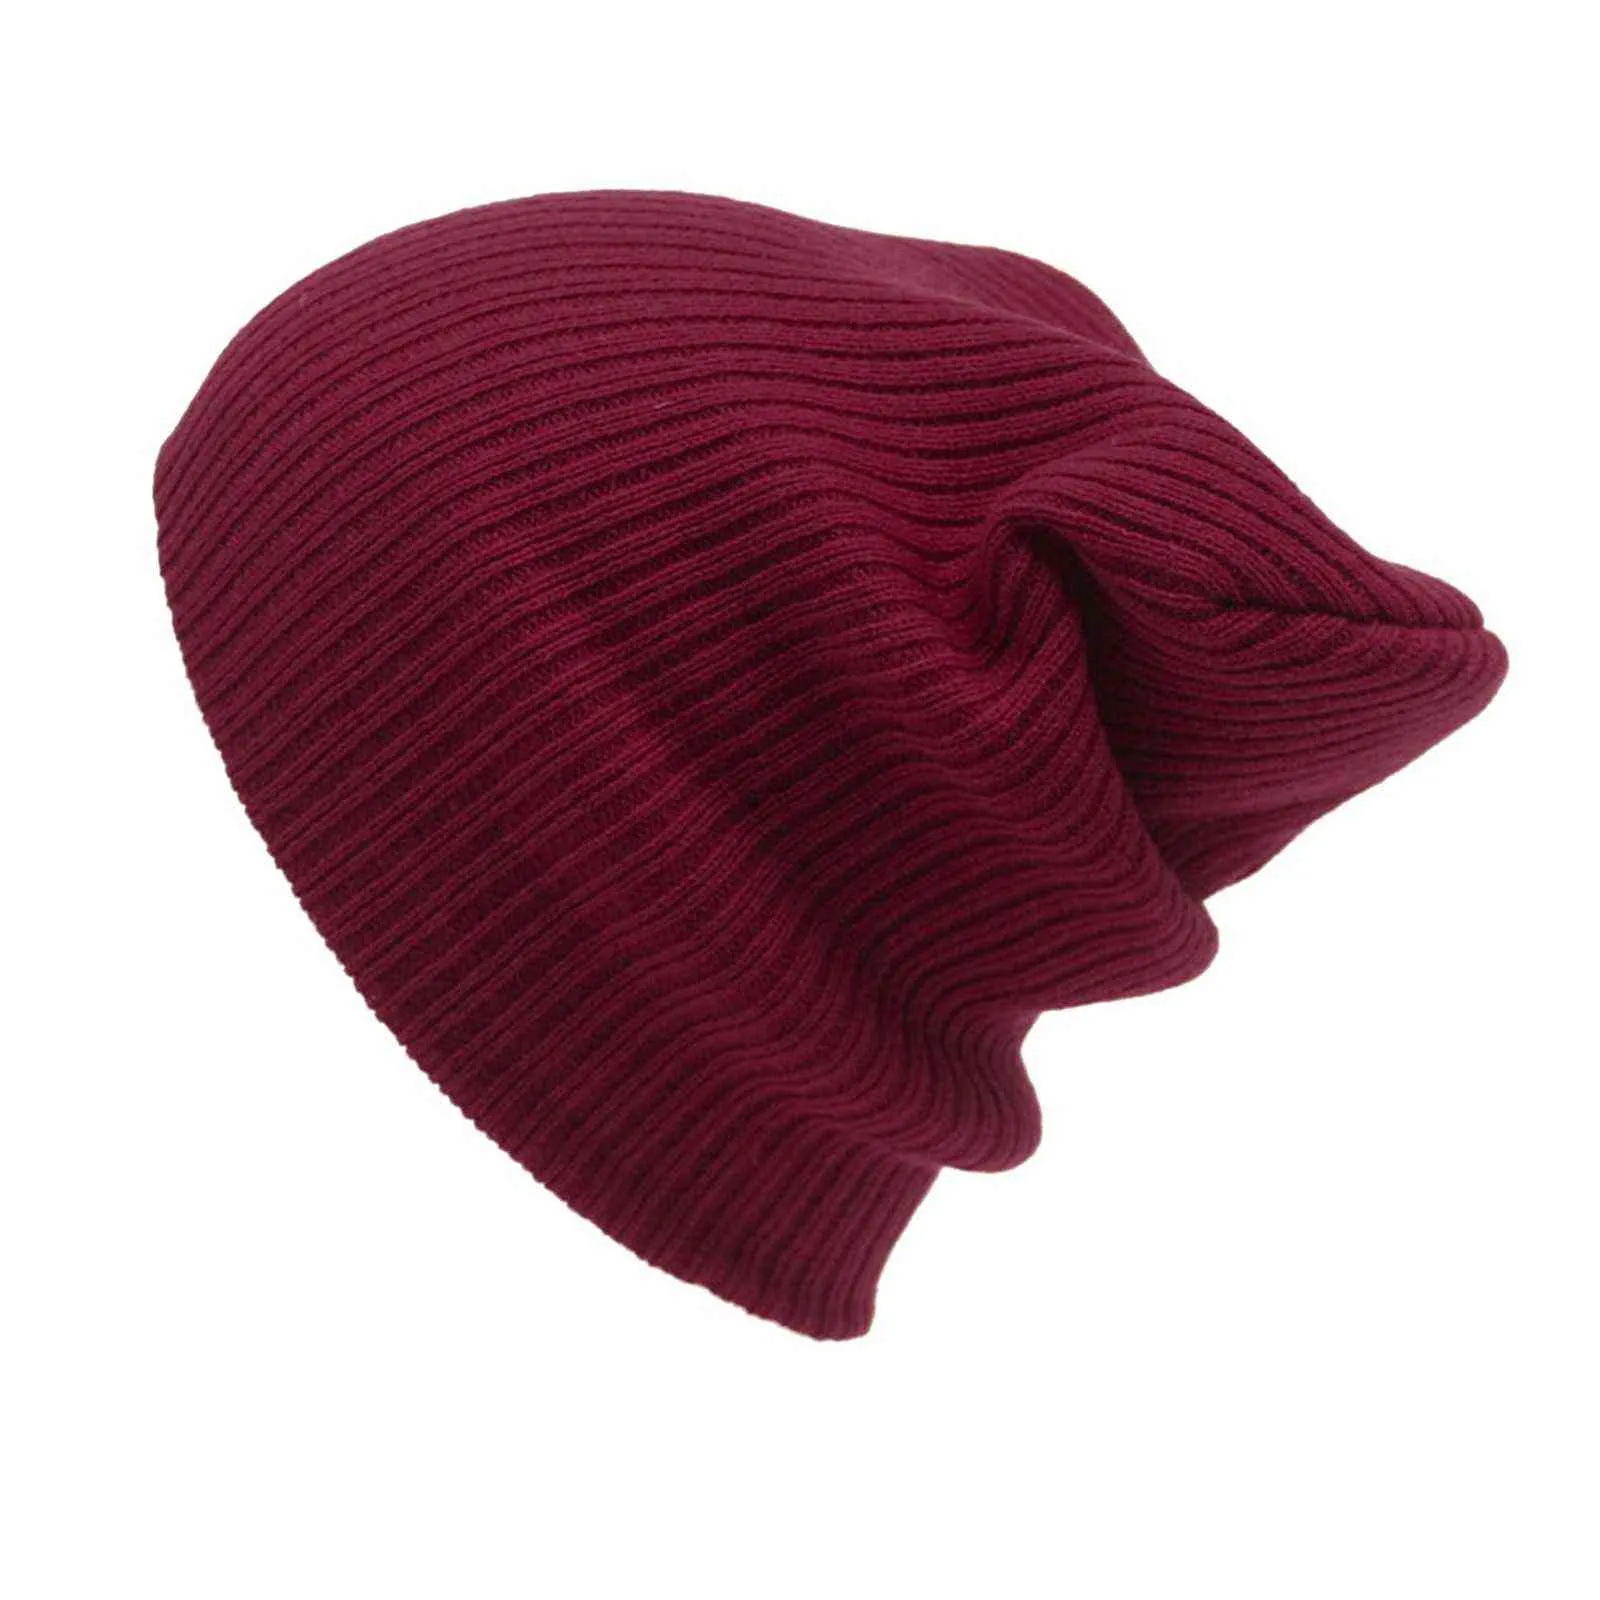 Ny vinter varm stickad beanie cap män kvinnors solida ull stickad hatt kpop stil ull beanie elegant all-match hatt 2020 y21111